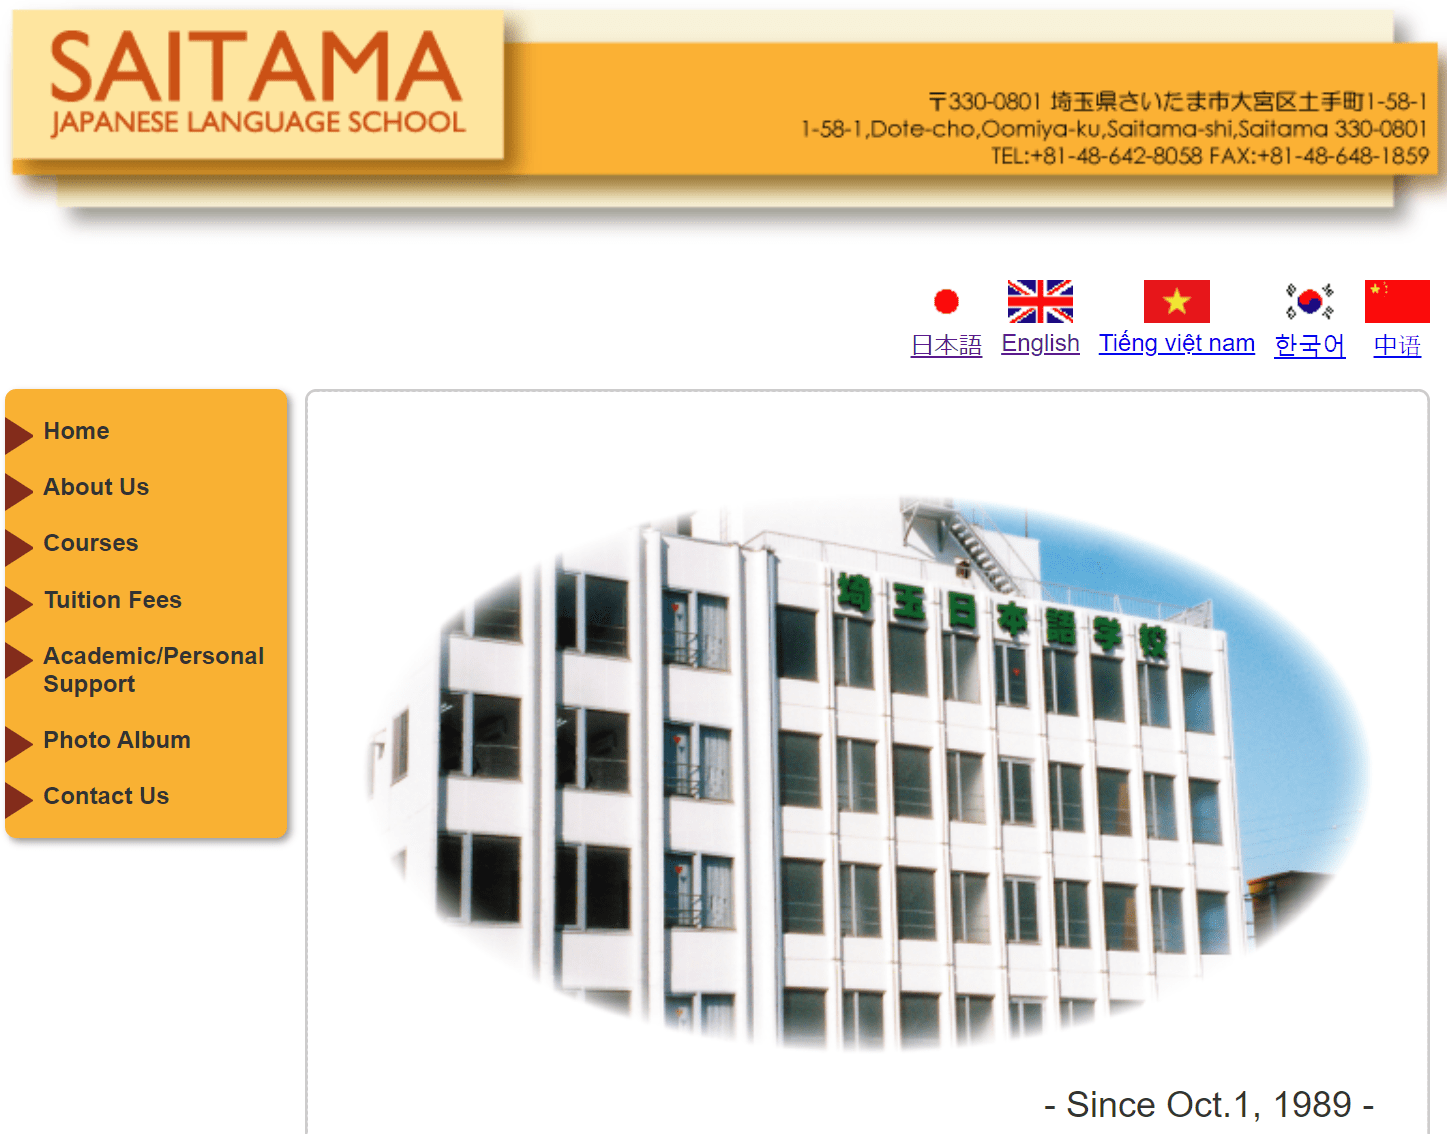 Saitama Japanese Language School website